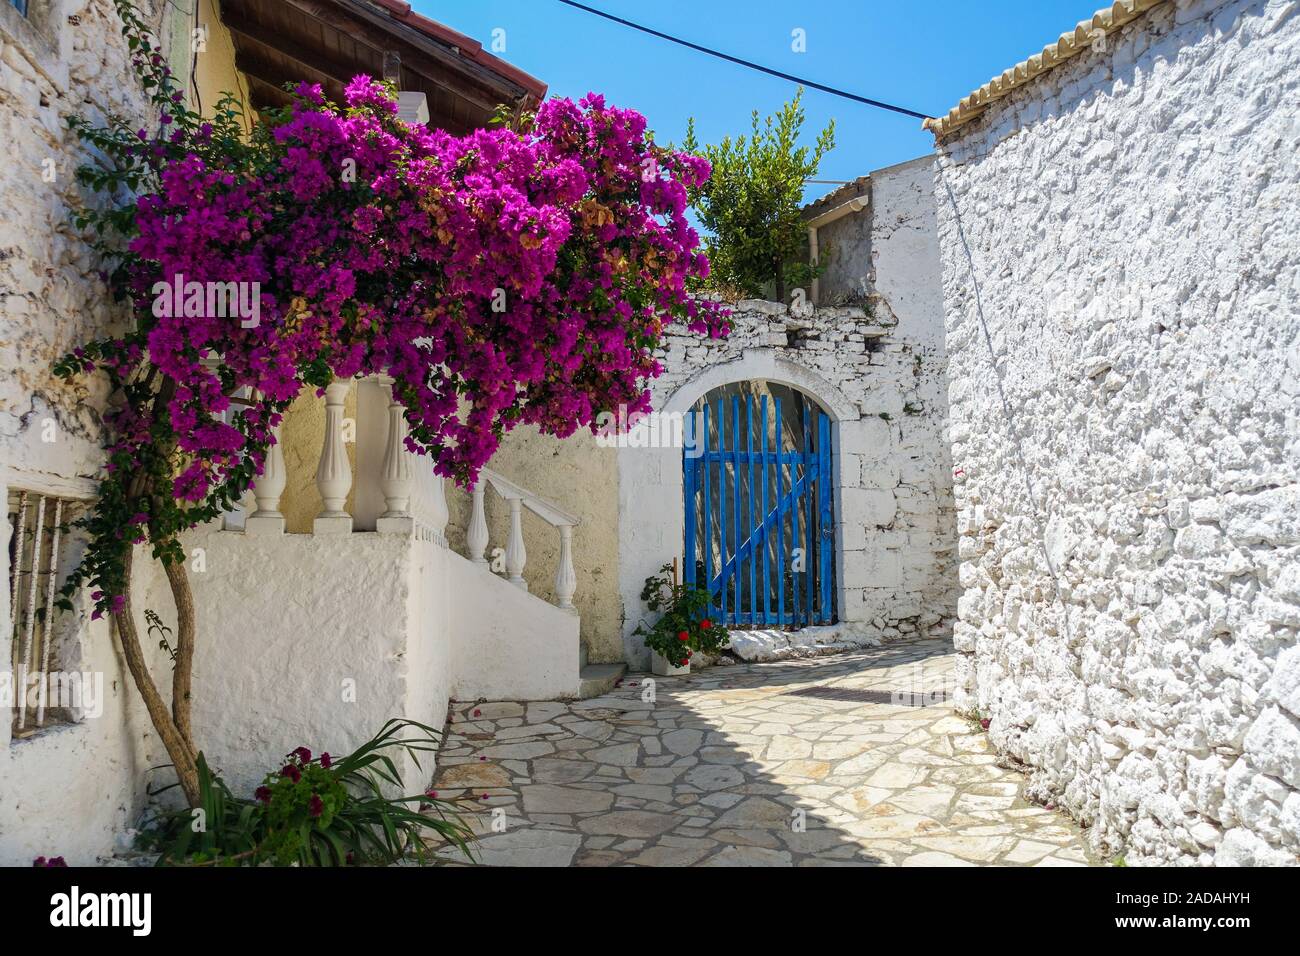 Le village pittoresque d'Afionas, Corfou, Grèce Banque D'Images